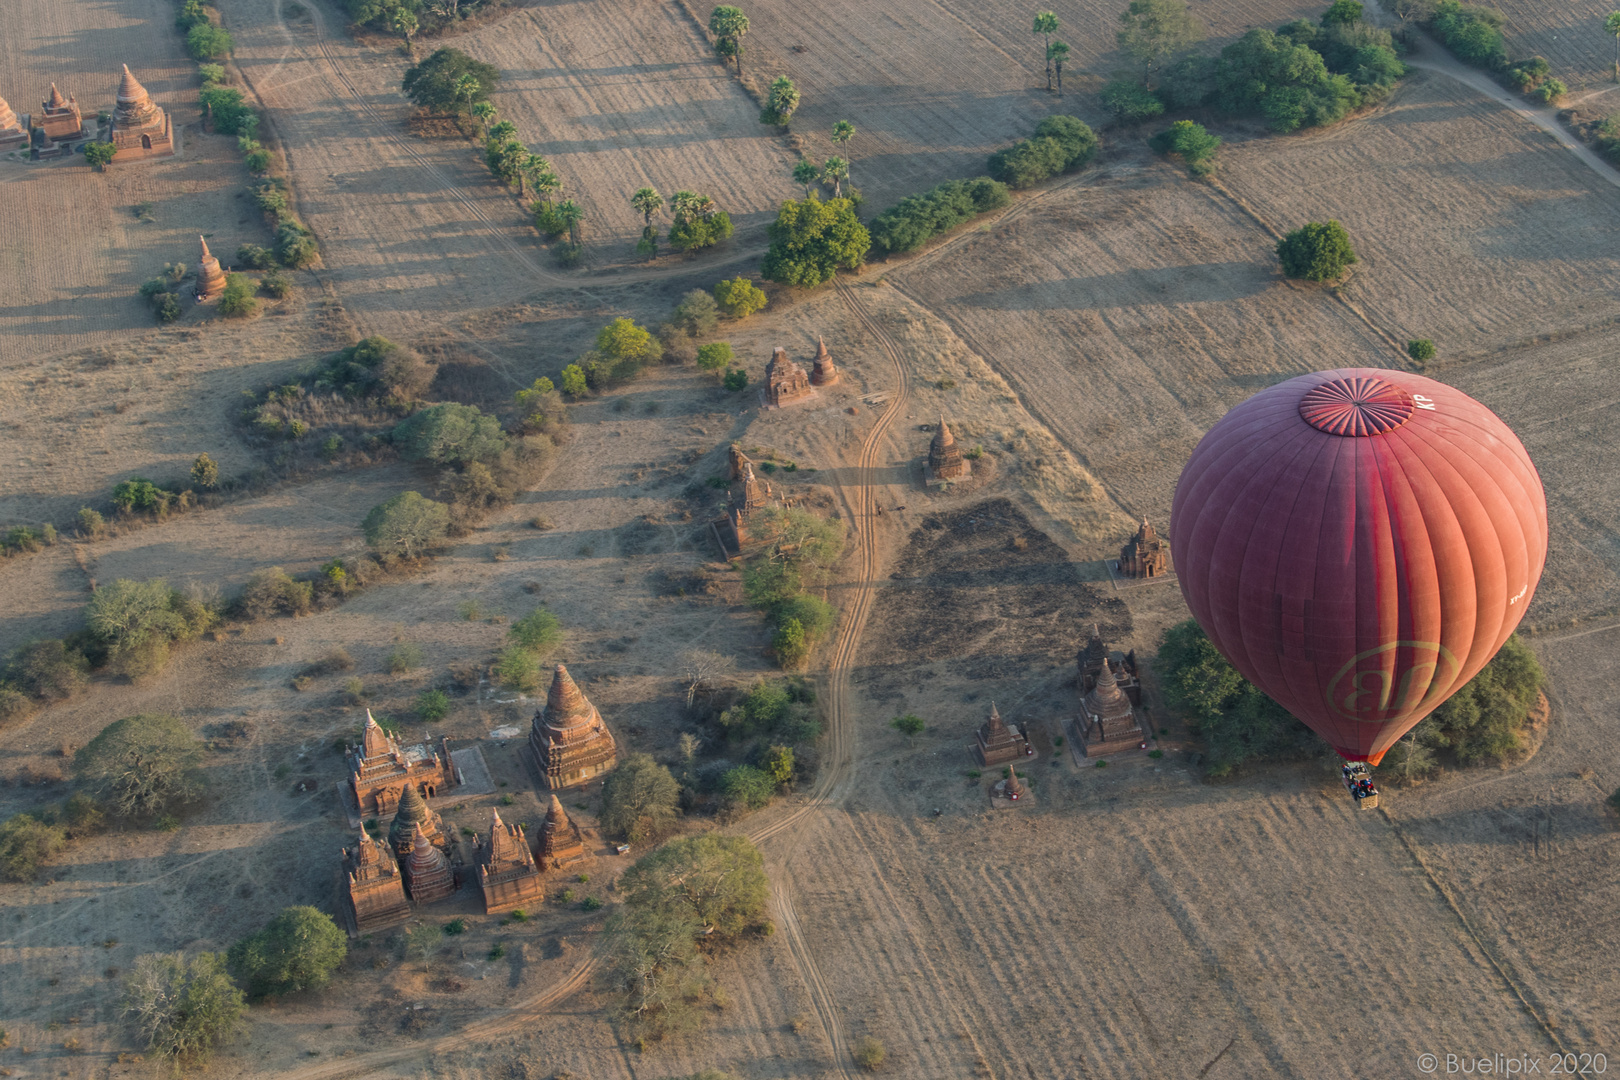 bei Sonnenaufgang im Ballon über die alten Tempel von Bagan (© Buelipix)